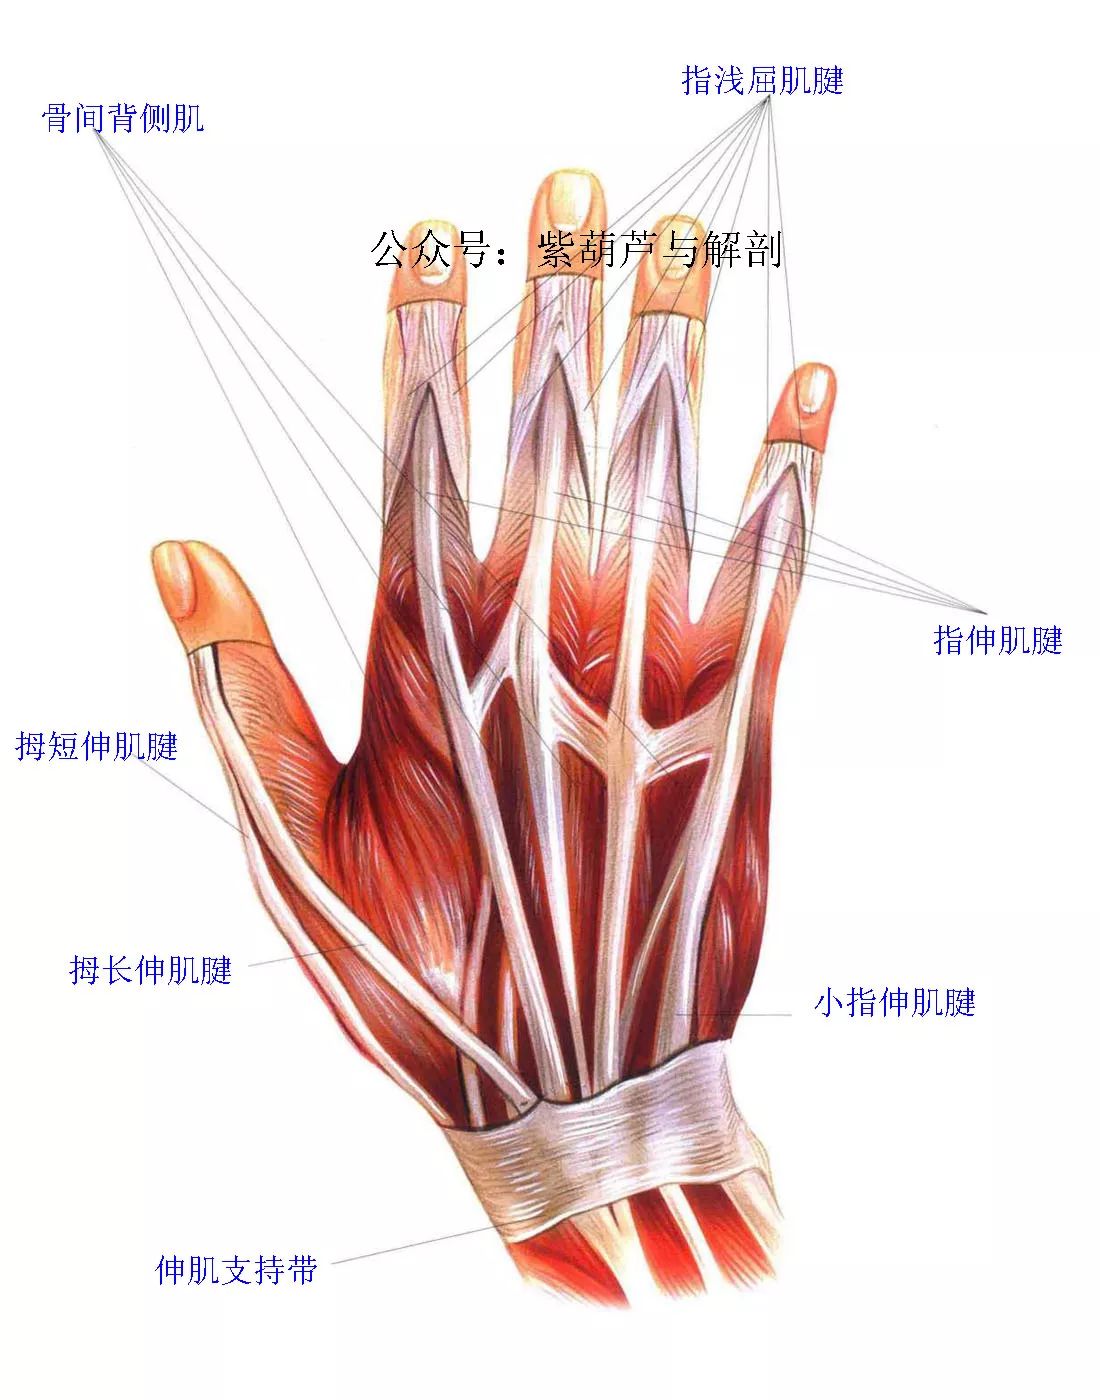 前臂与手部解剖肌肉图谱高清可收藏